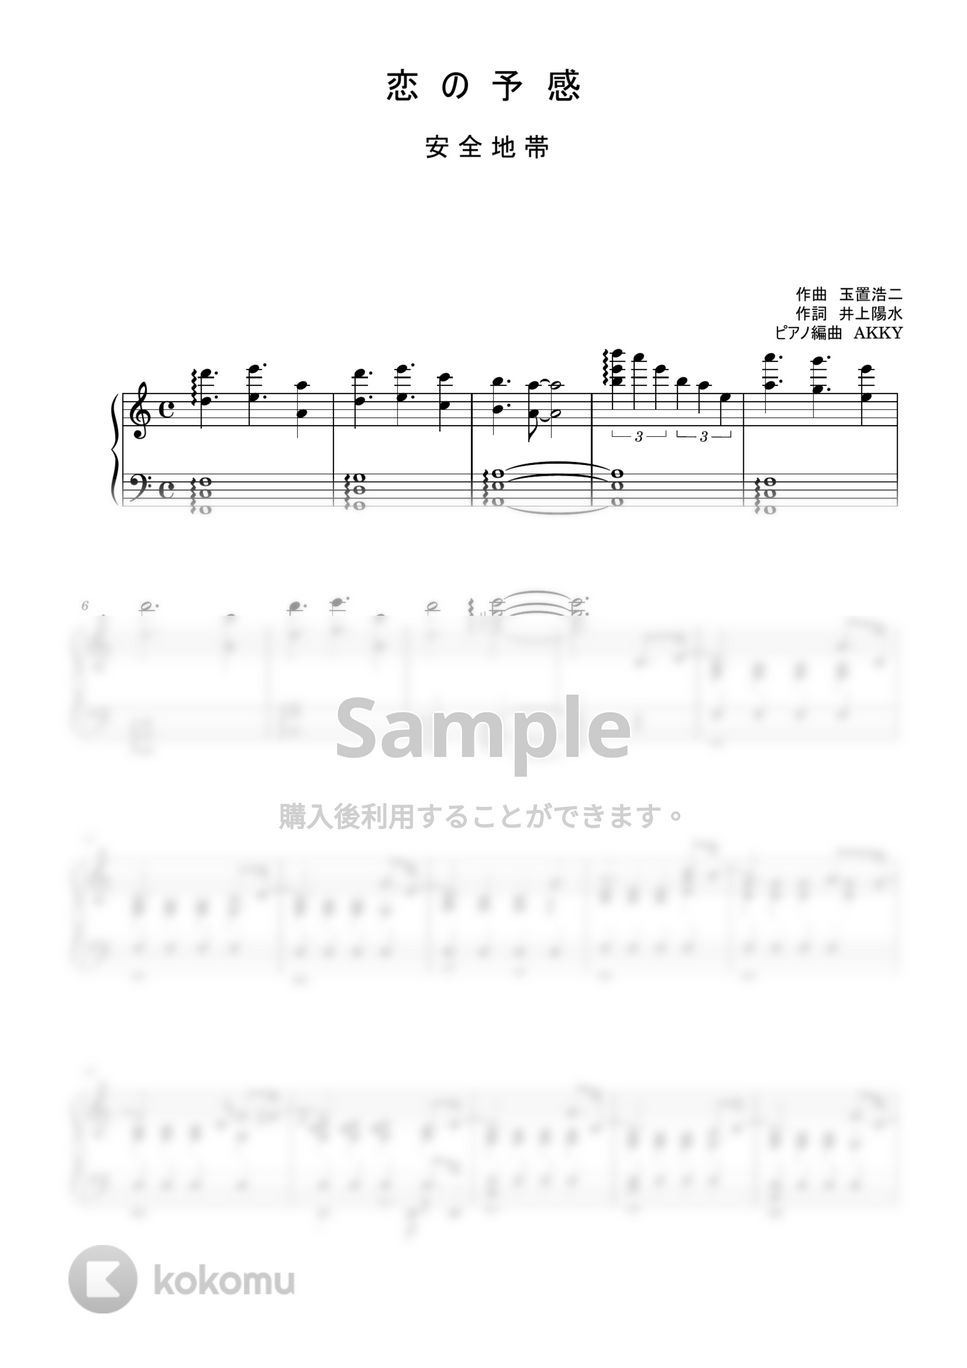 玉置浩二 - 恋の予感 (ピアノ / ピアノソロ / 安全地帯 / 玉置浩二) by AKKY